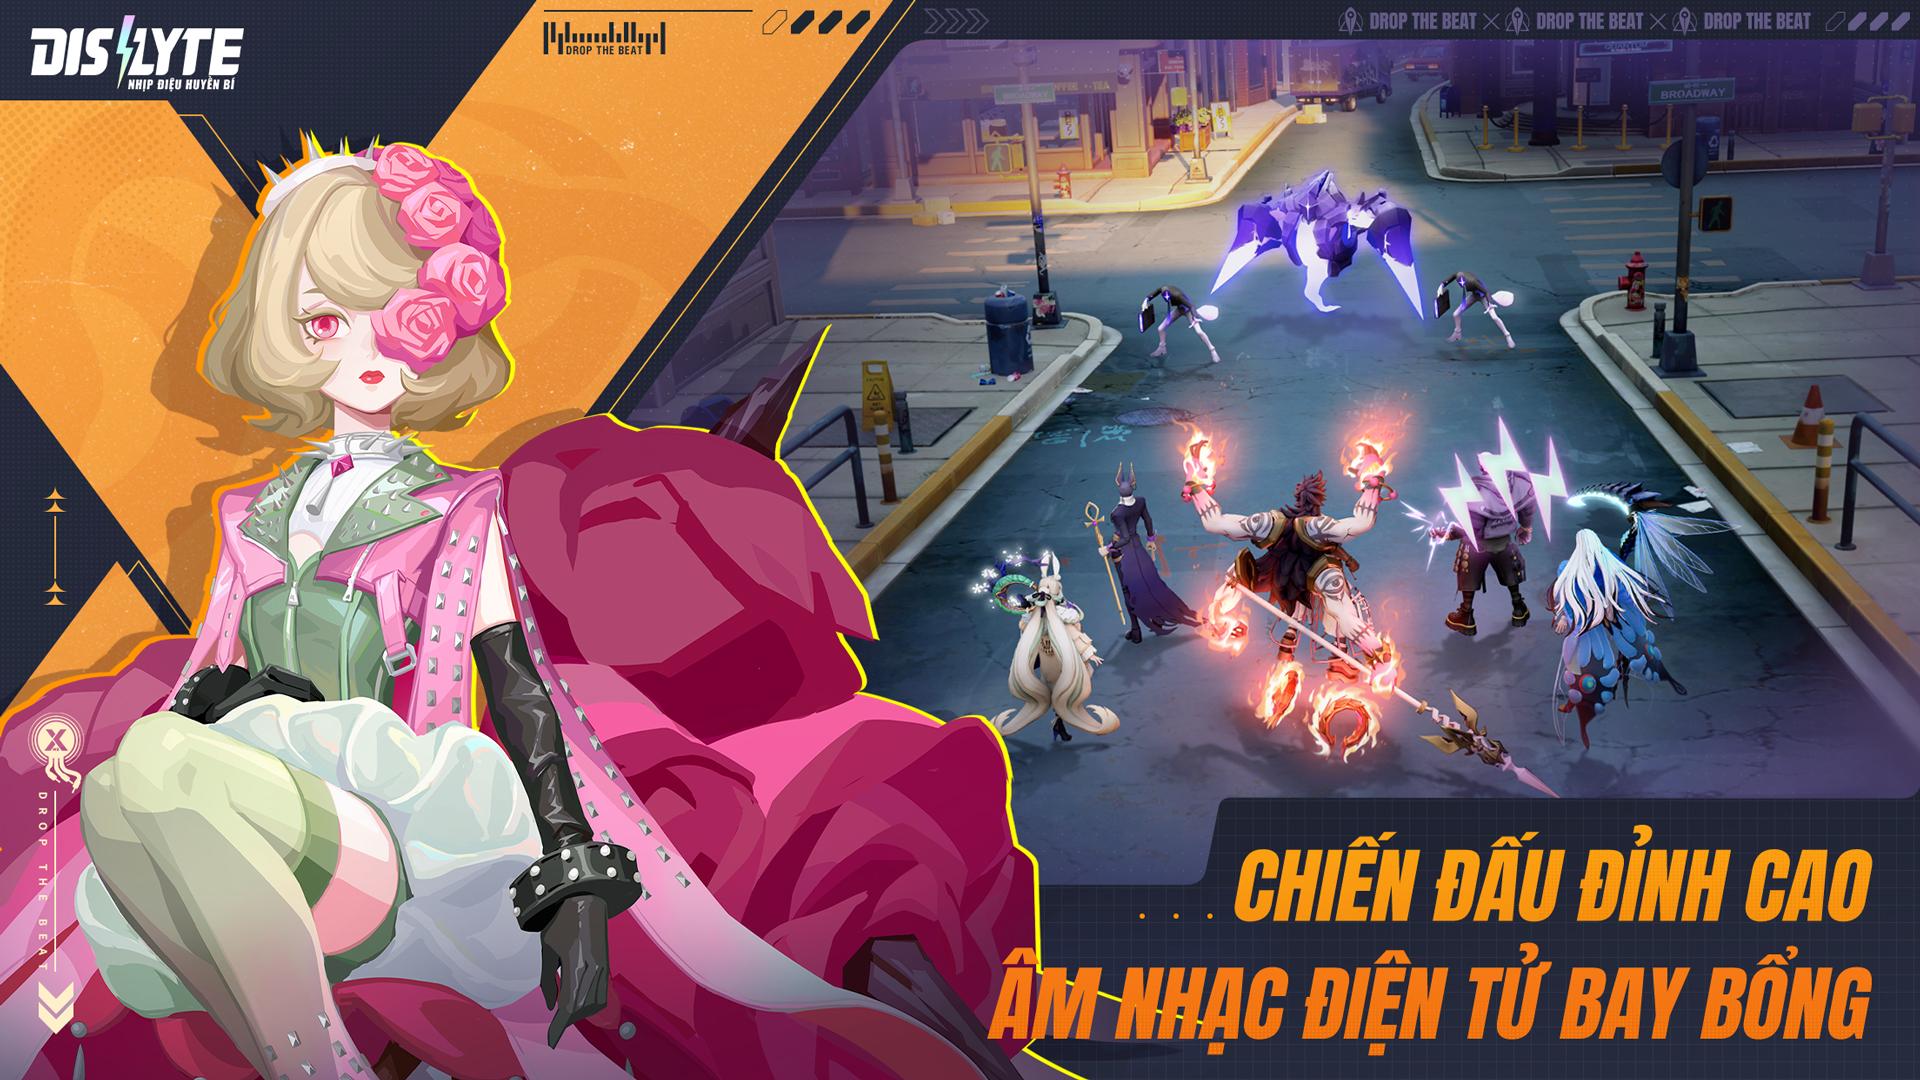 Binz chính thức đồng hành cùng DISLYTE - Game thẻ bài RPG thần thoại toàn cầu sắp ra mắt tại Việt Nam- Ảnh 2.